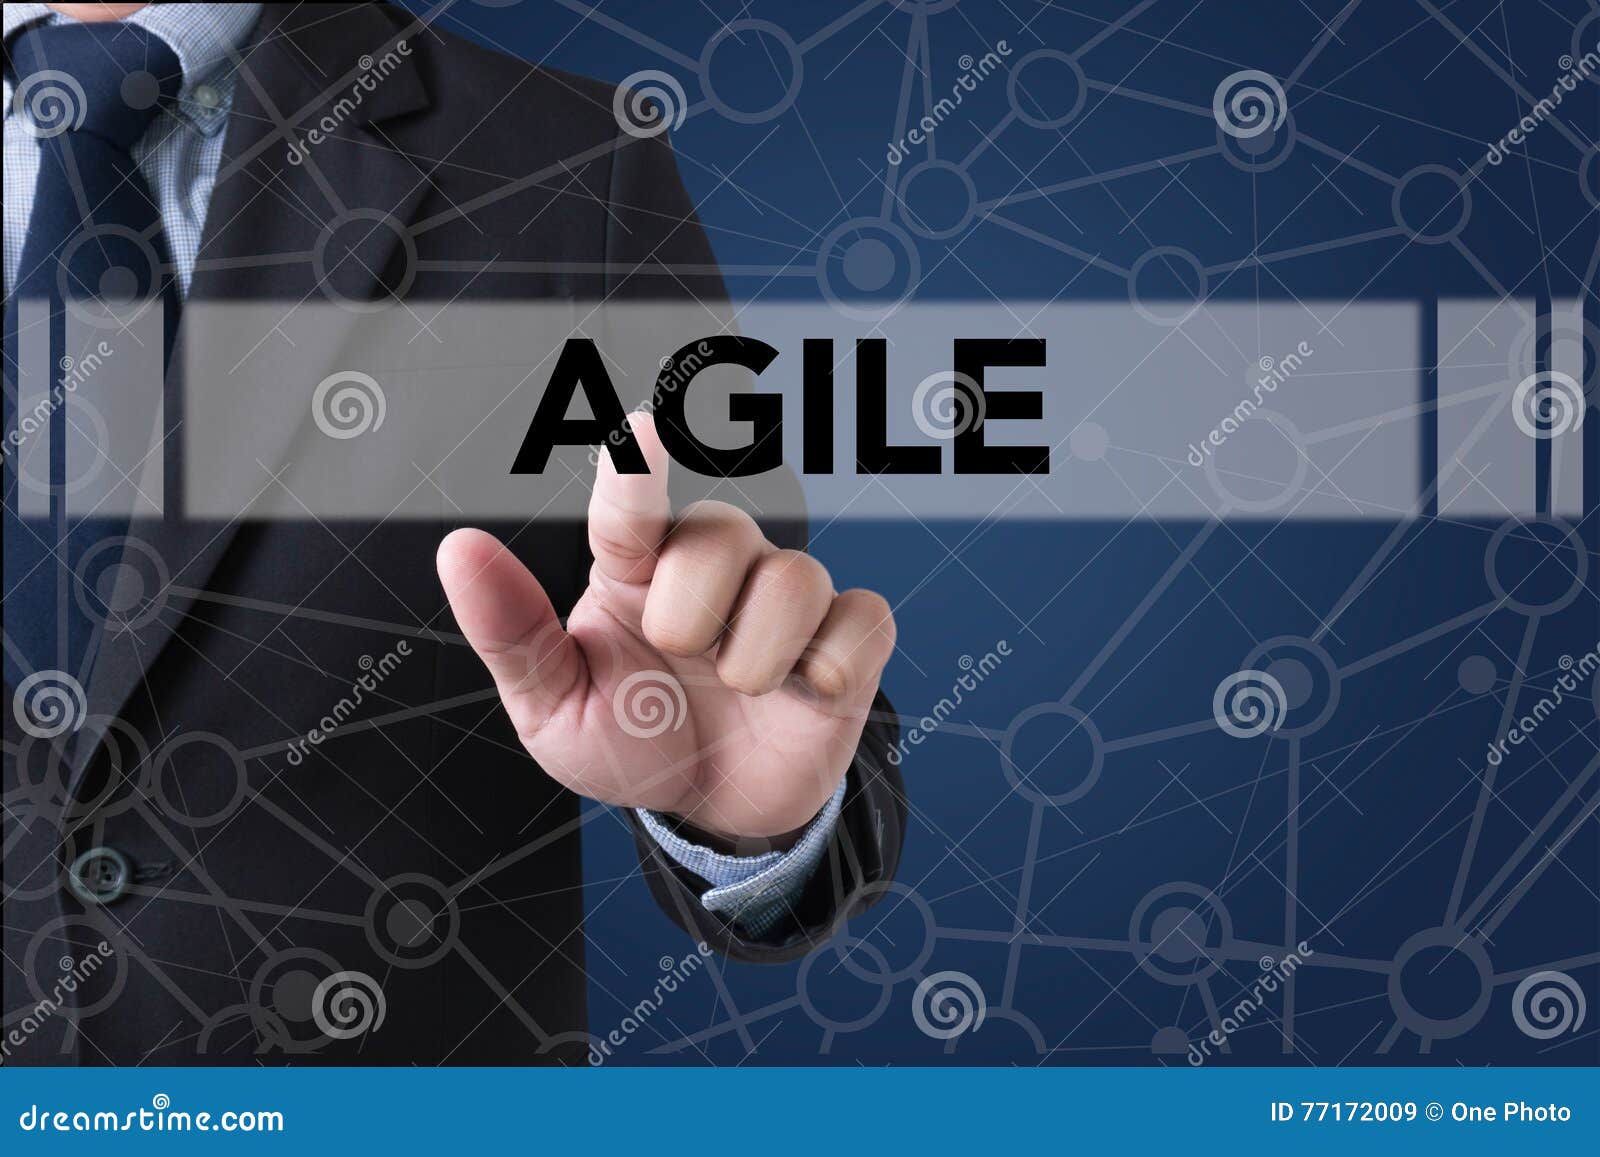 agile agility nimble quick fast concept